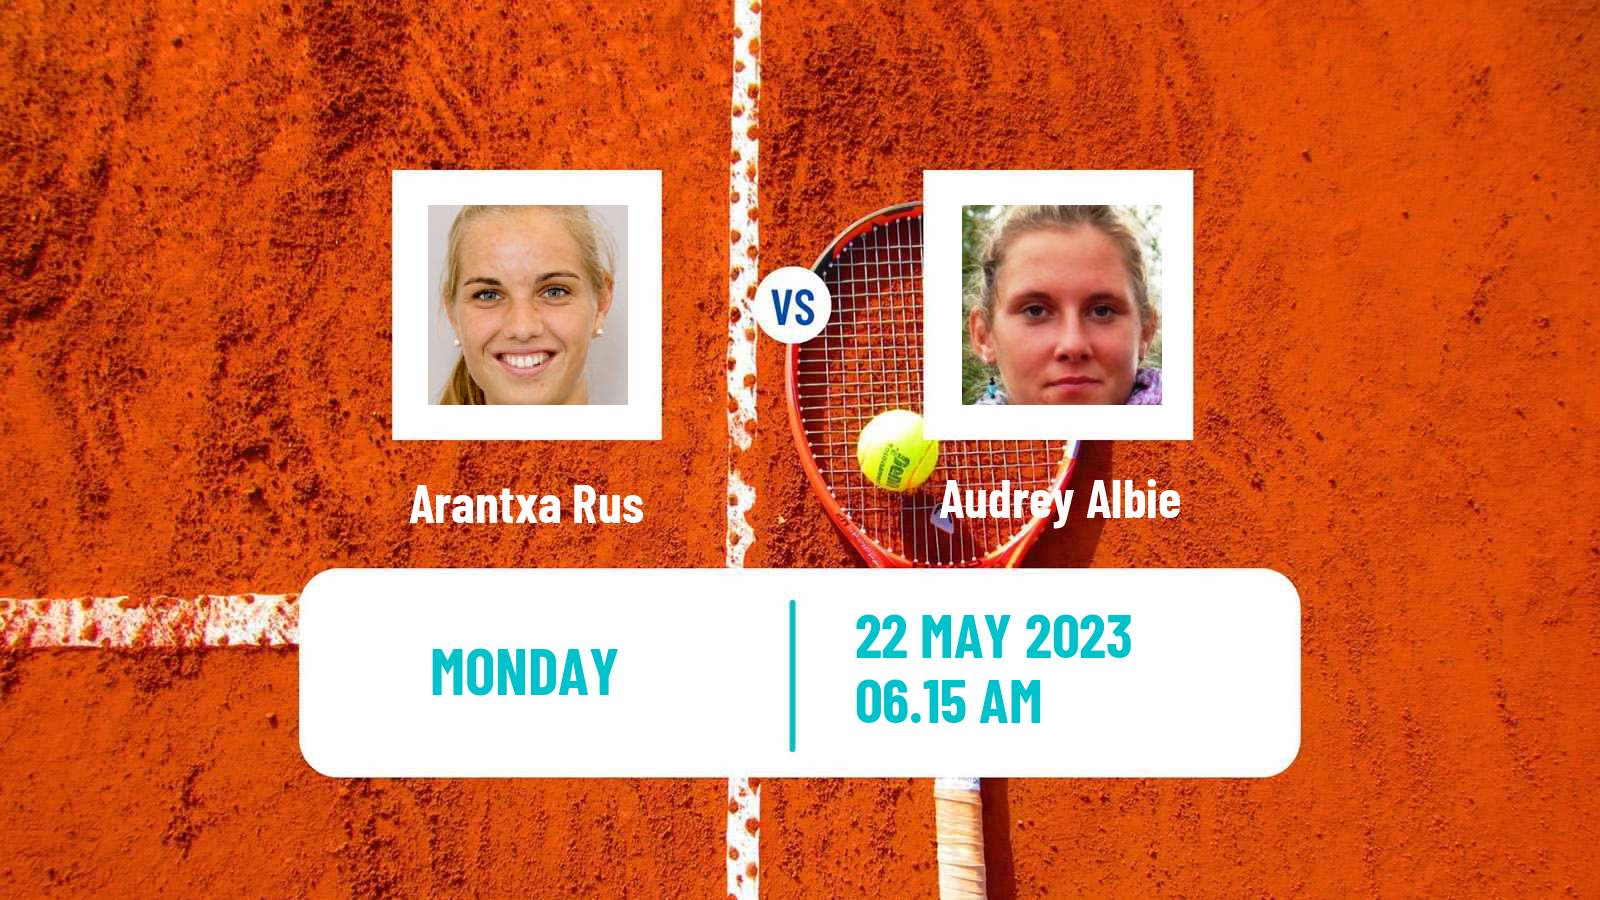 Tennis WTA Roland Garros Arantxa Rus - Audrey Albie